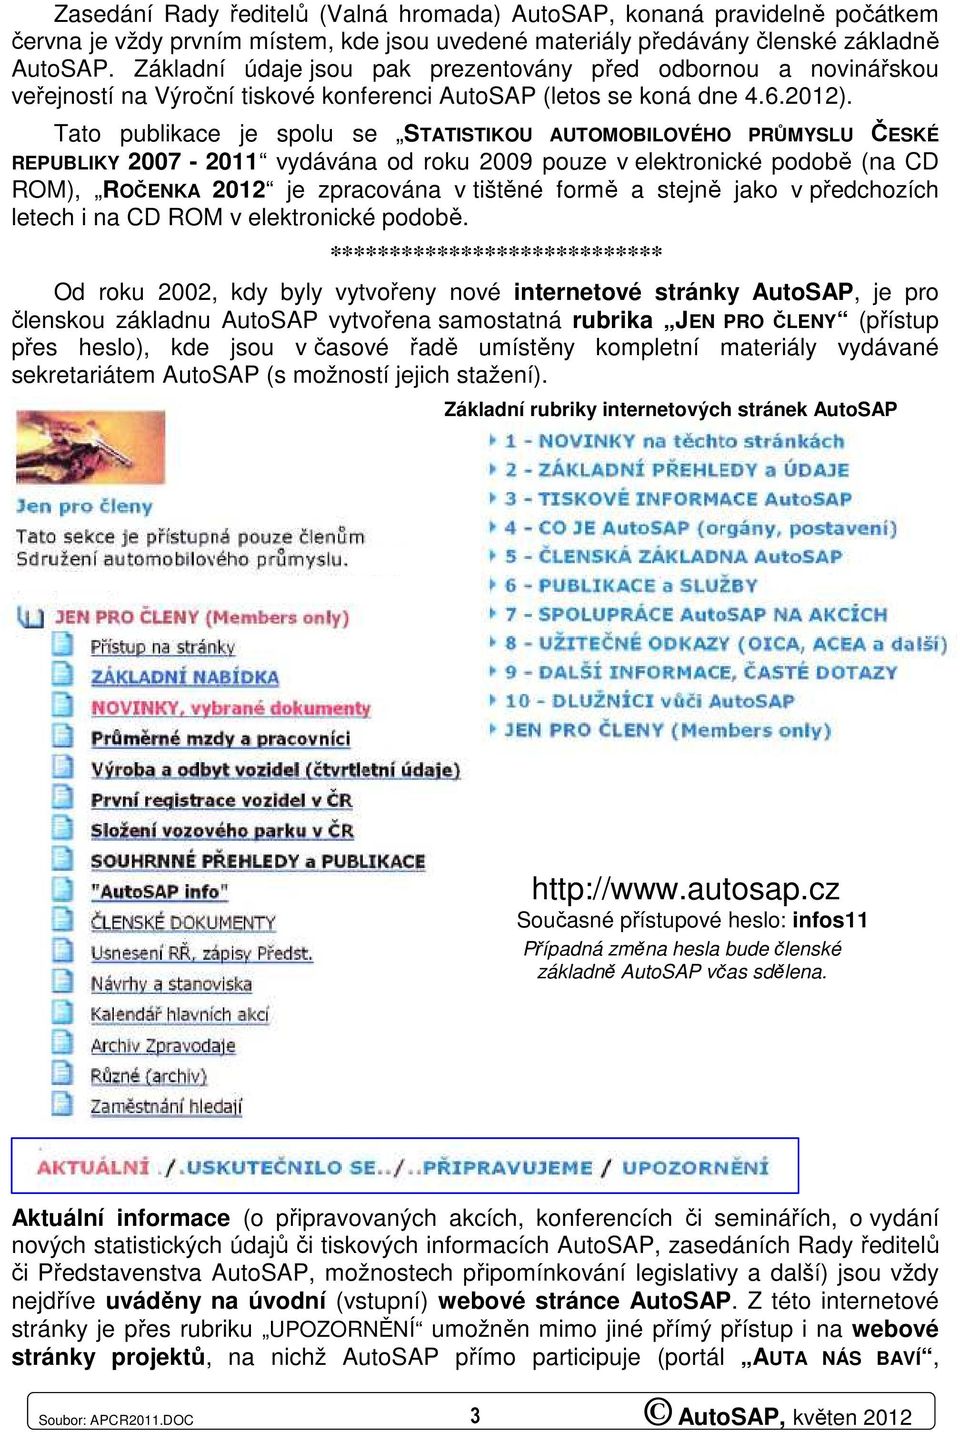 Tato publikace je spolu se STATISTIKOU AUTOMOBILOVÉHO PRŮMYSLU ČESKÉ REPUBLIKY 2007-2011 vydávána od roku 2009 pouze v elektronické podobě (na CD ROM), ROČENKA 2012 je zpracována v tištěné formě a